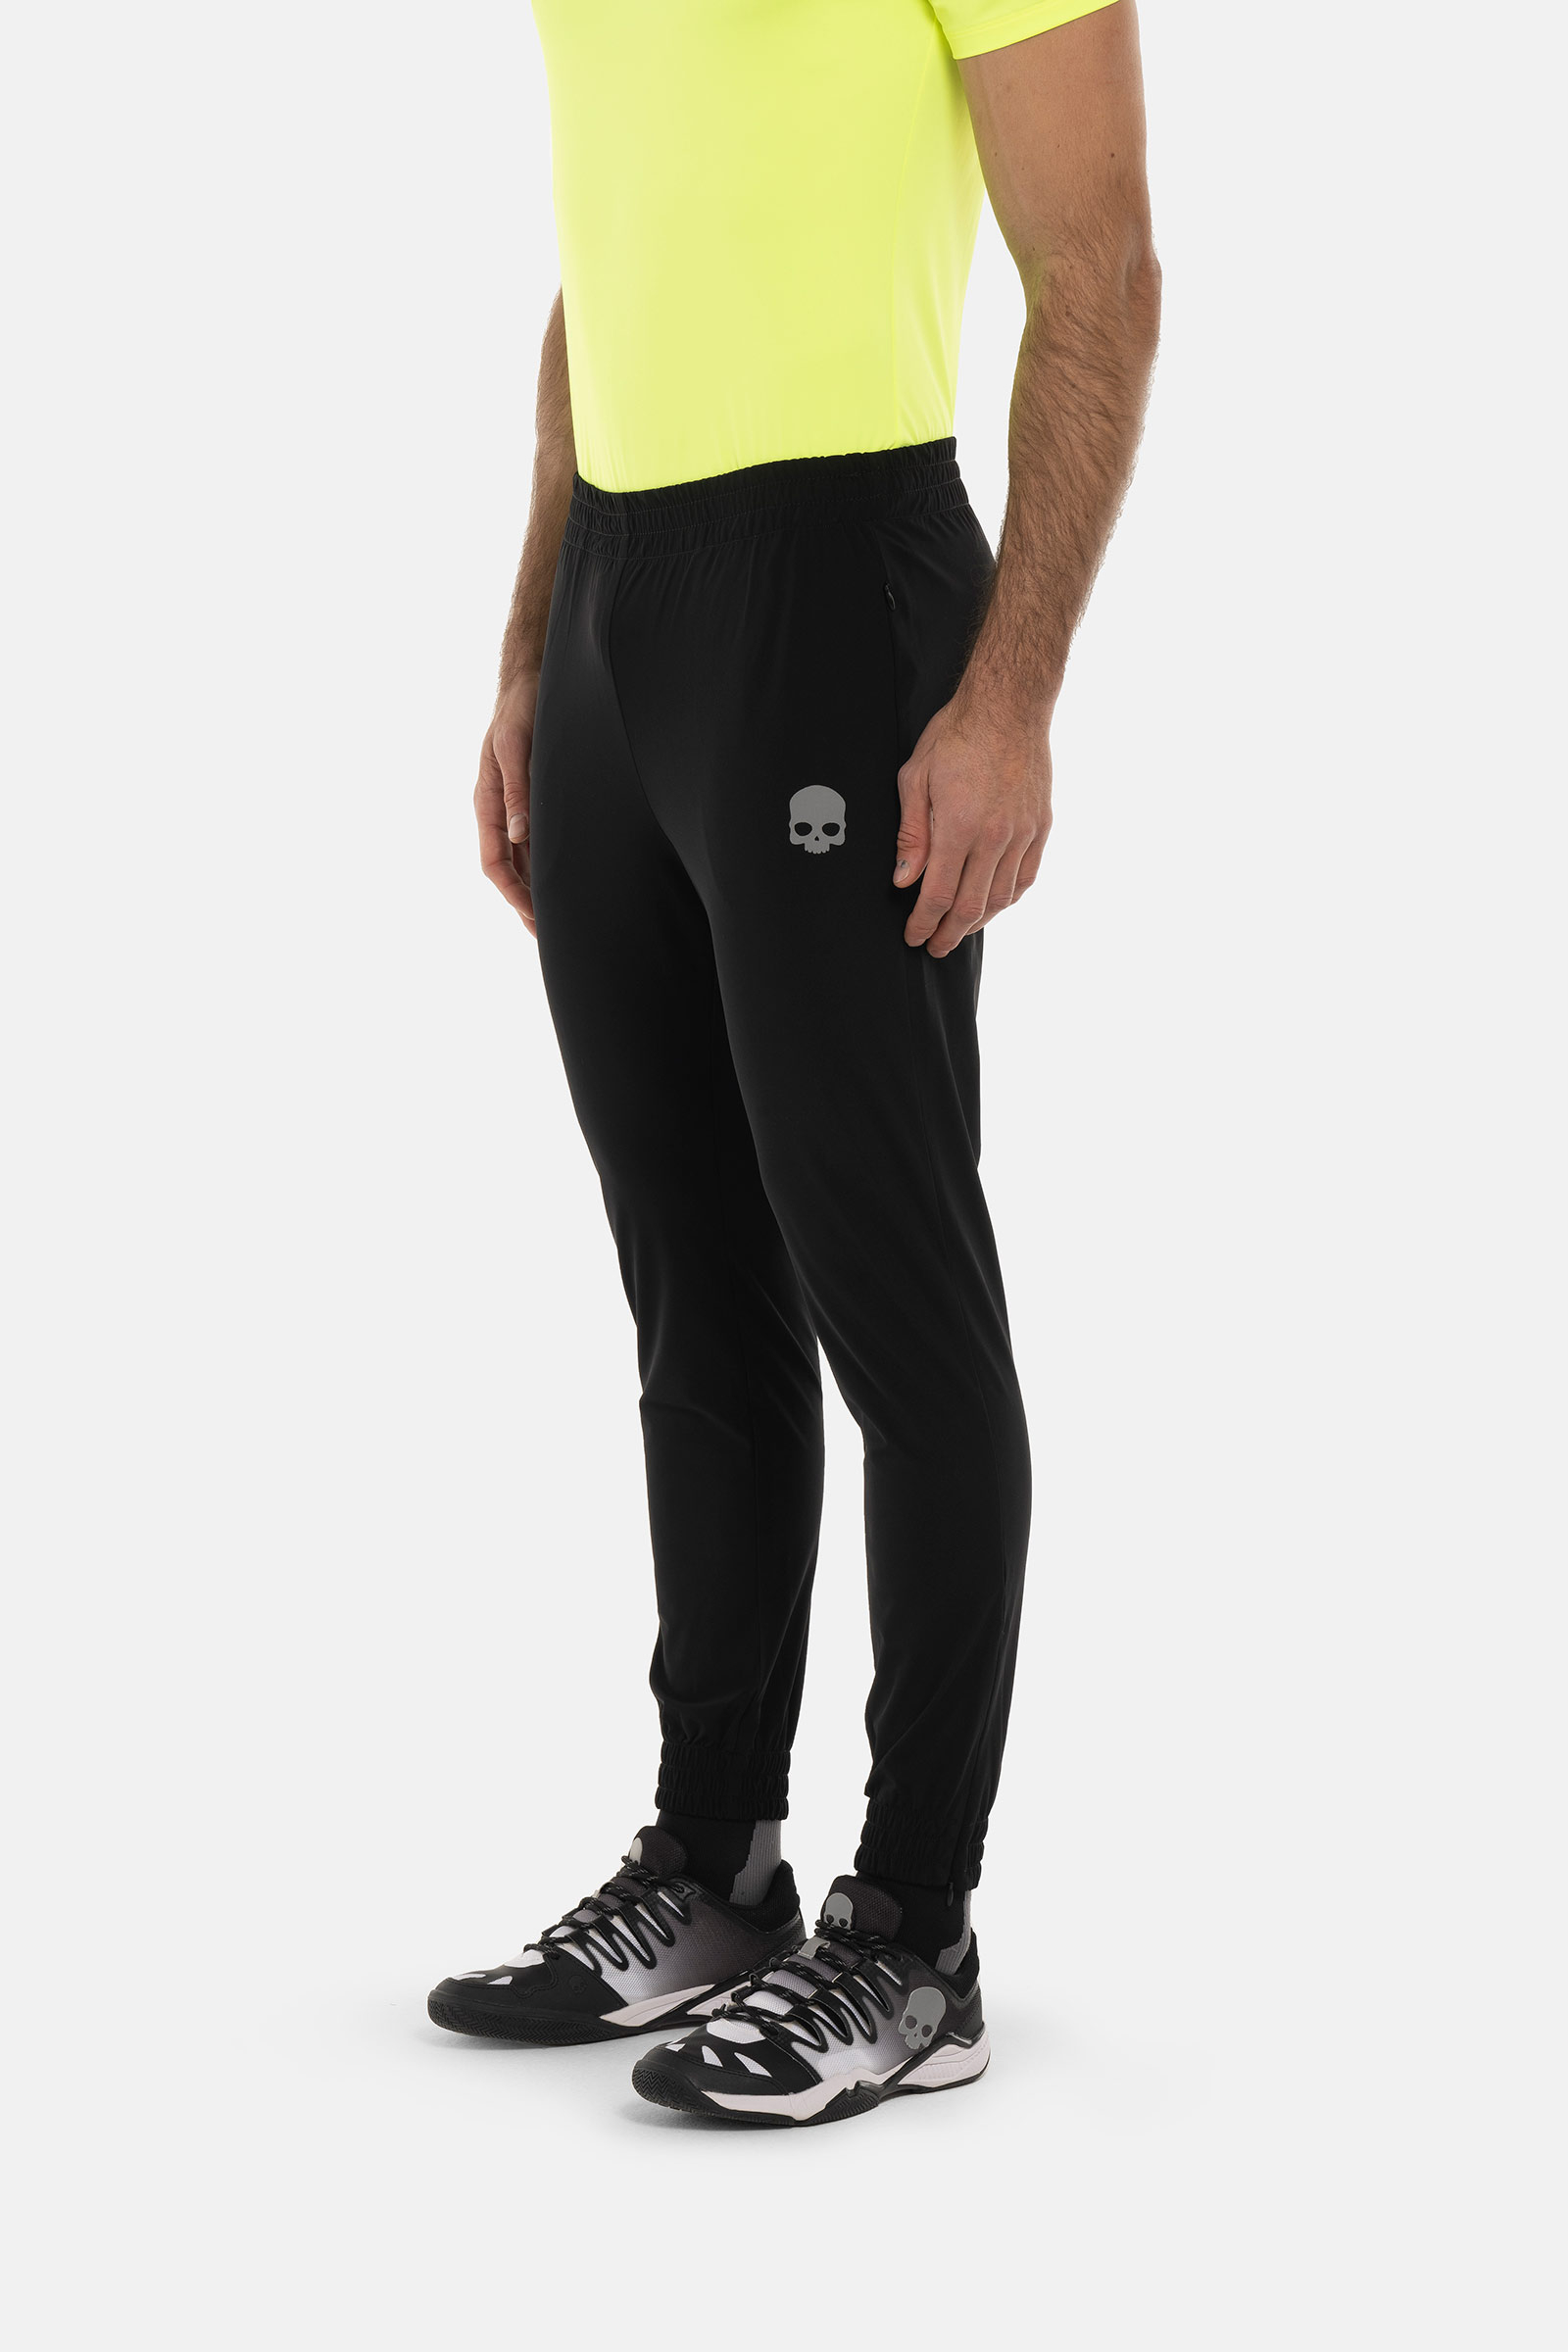 TECH PANTS SKULL - BLACK - Hydrogen - Luxury Sportwear